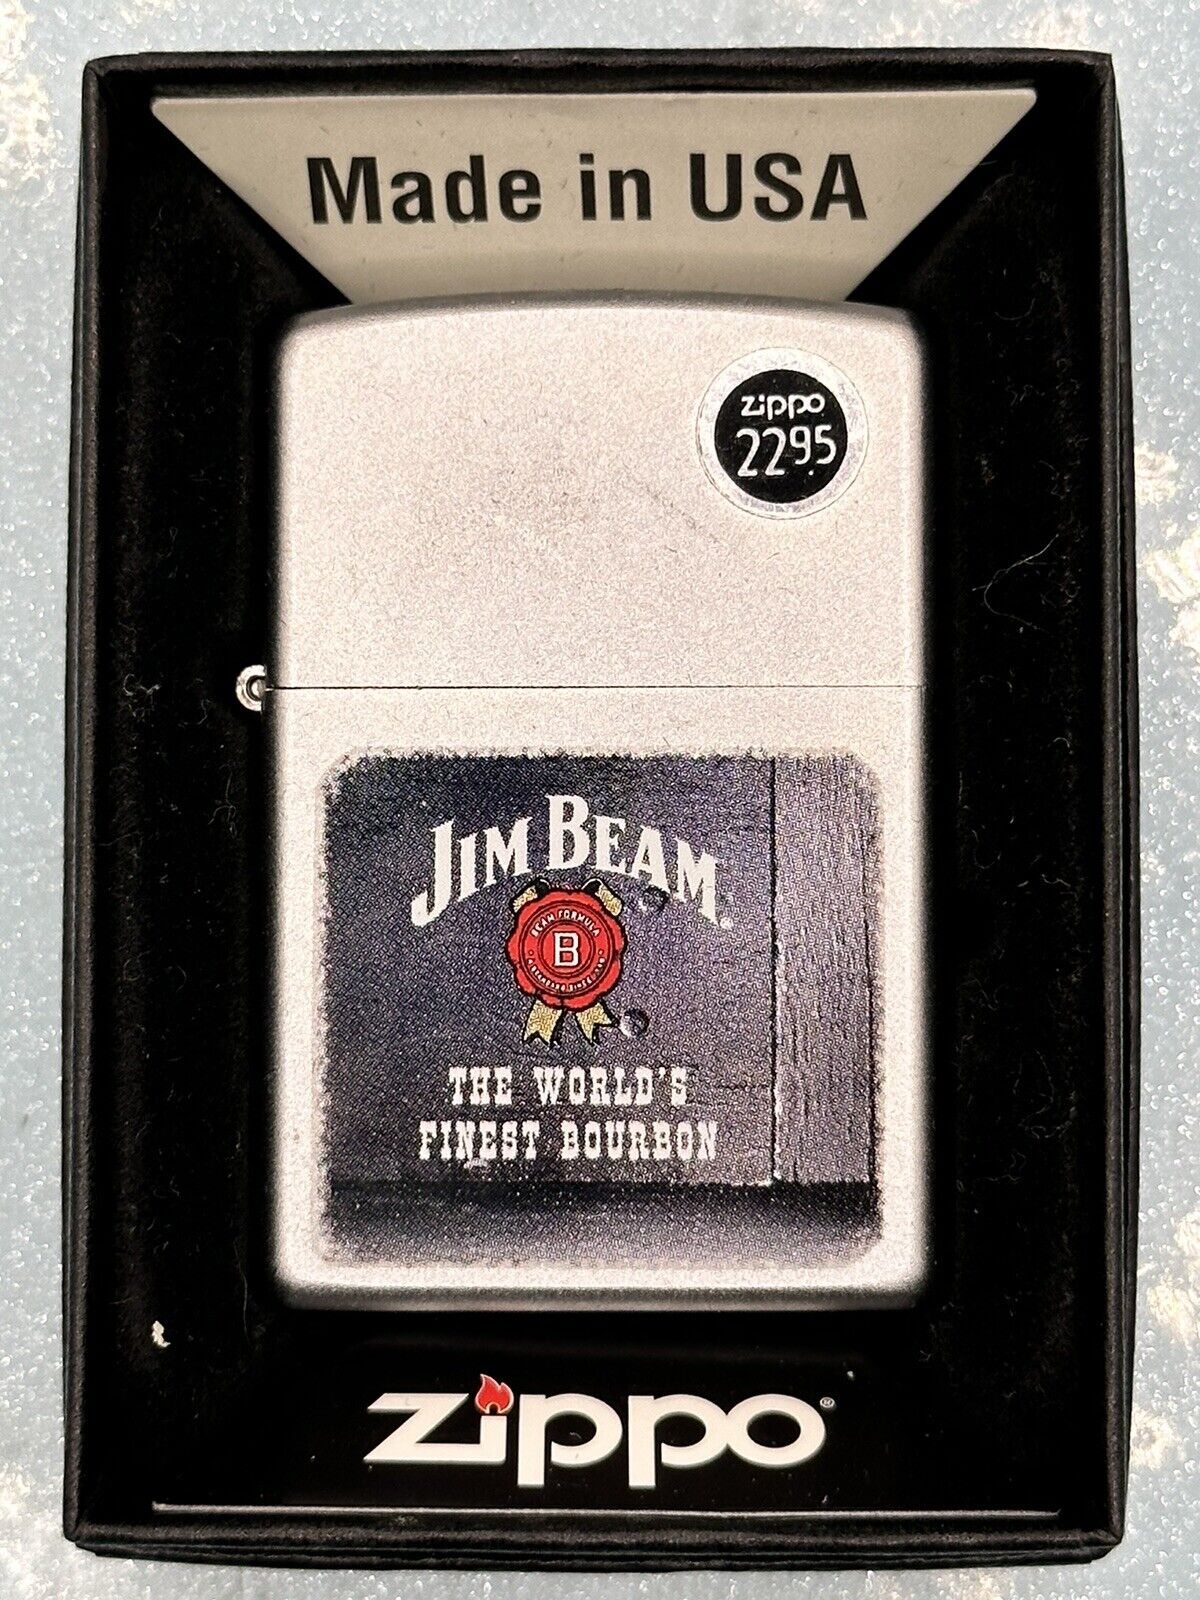 2005 Jim Beam Zippo Lighter NEW Never Struck The Worlds Finest Bourbon